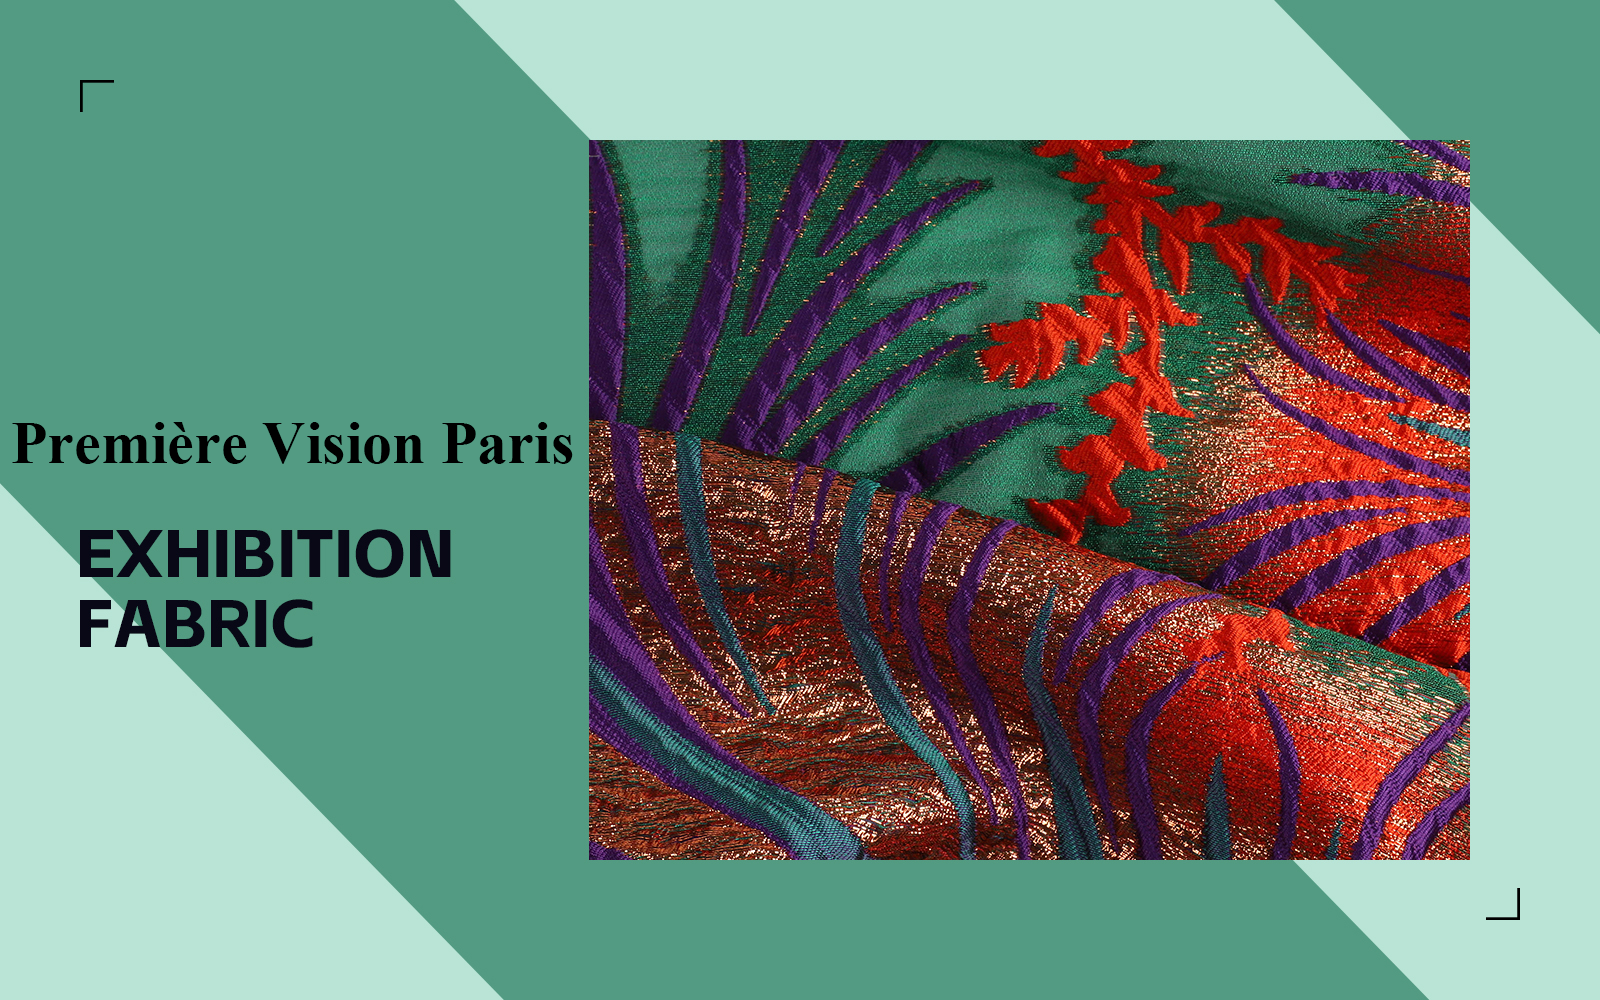 Jacquard -- The Fabric Analysis of Première Vision Paris